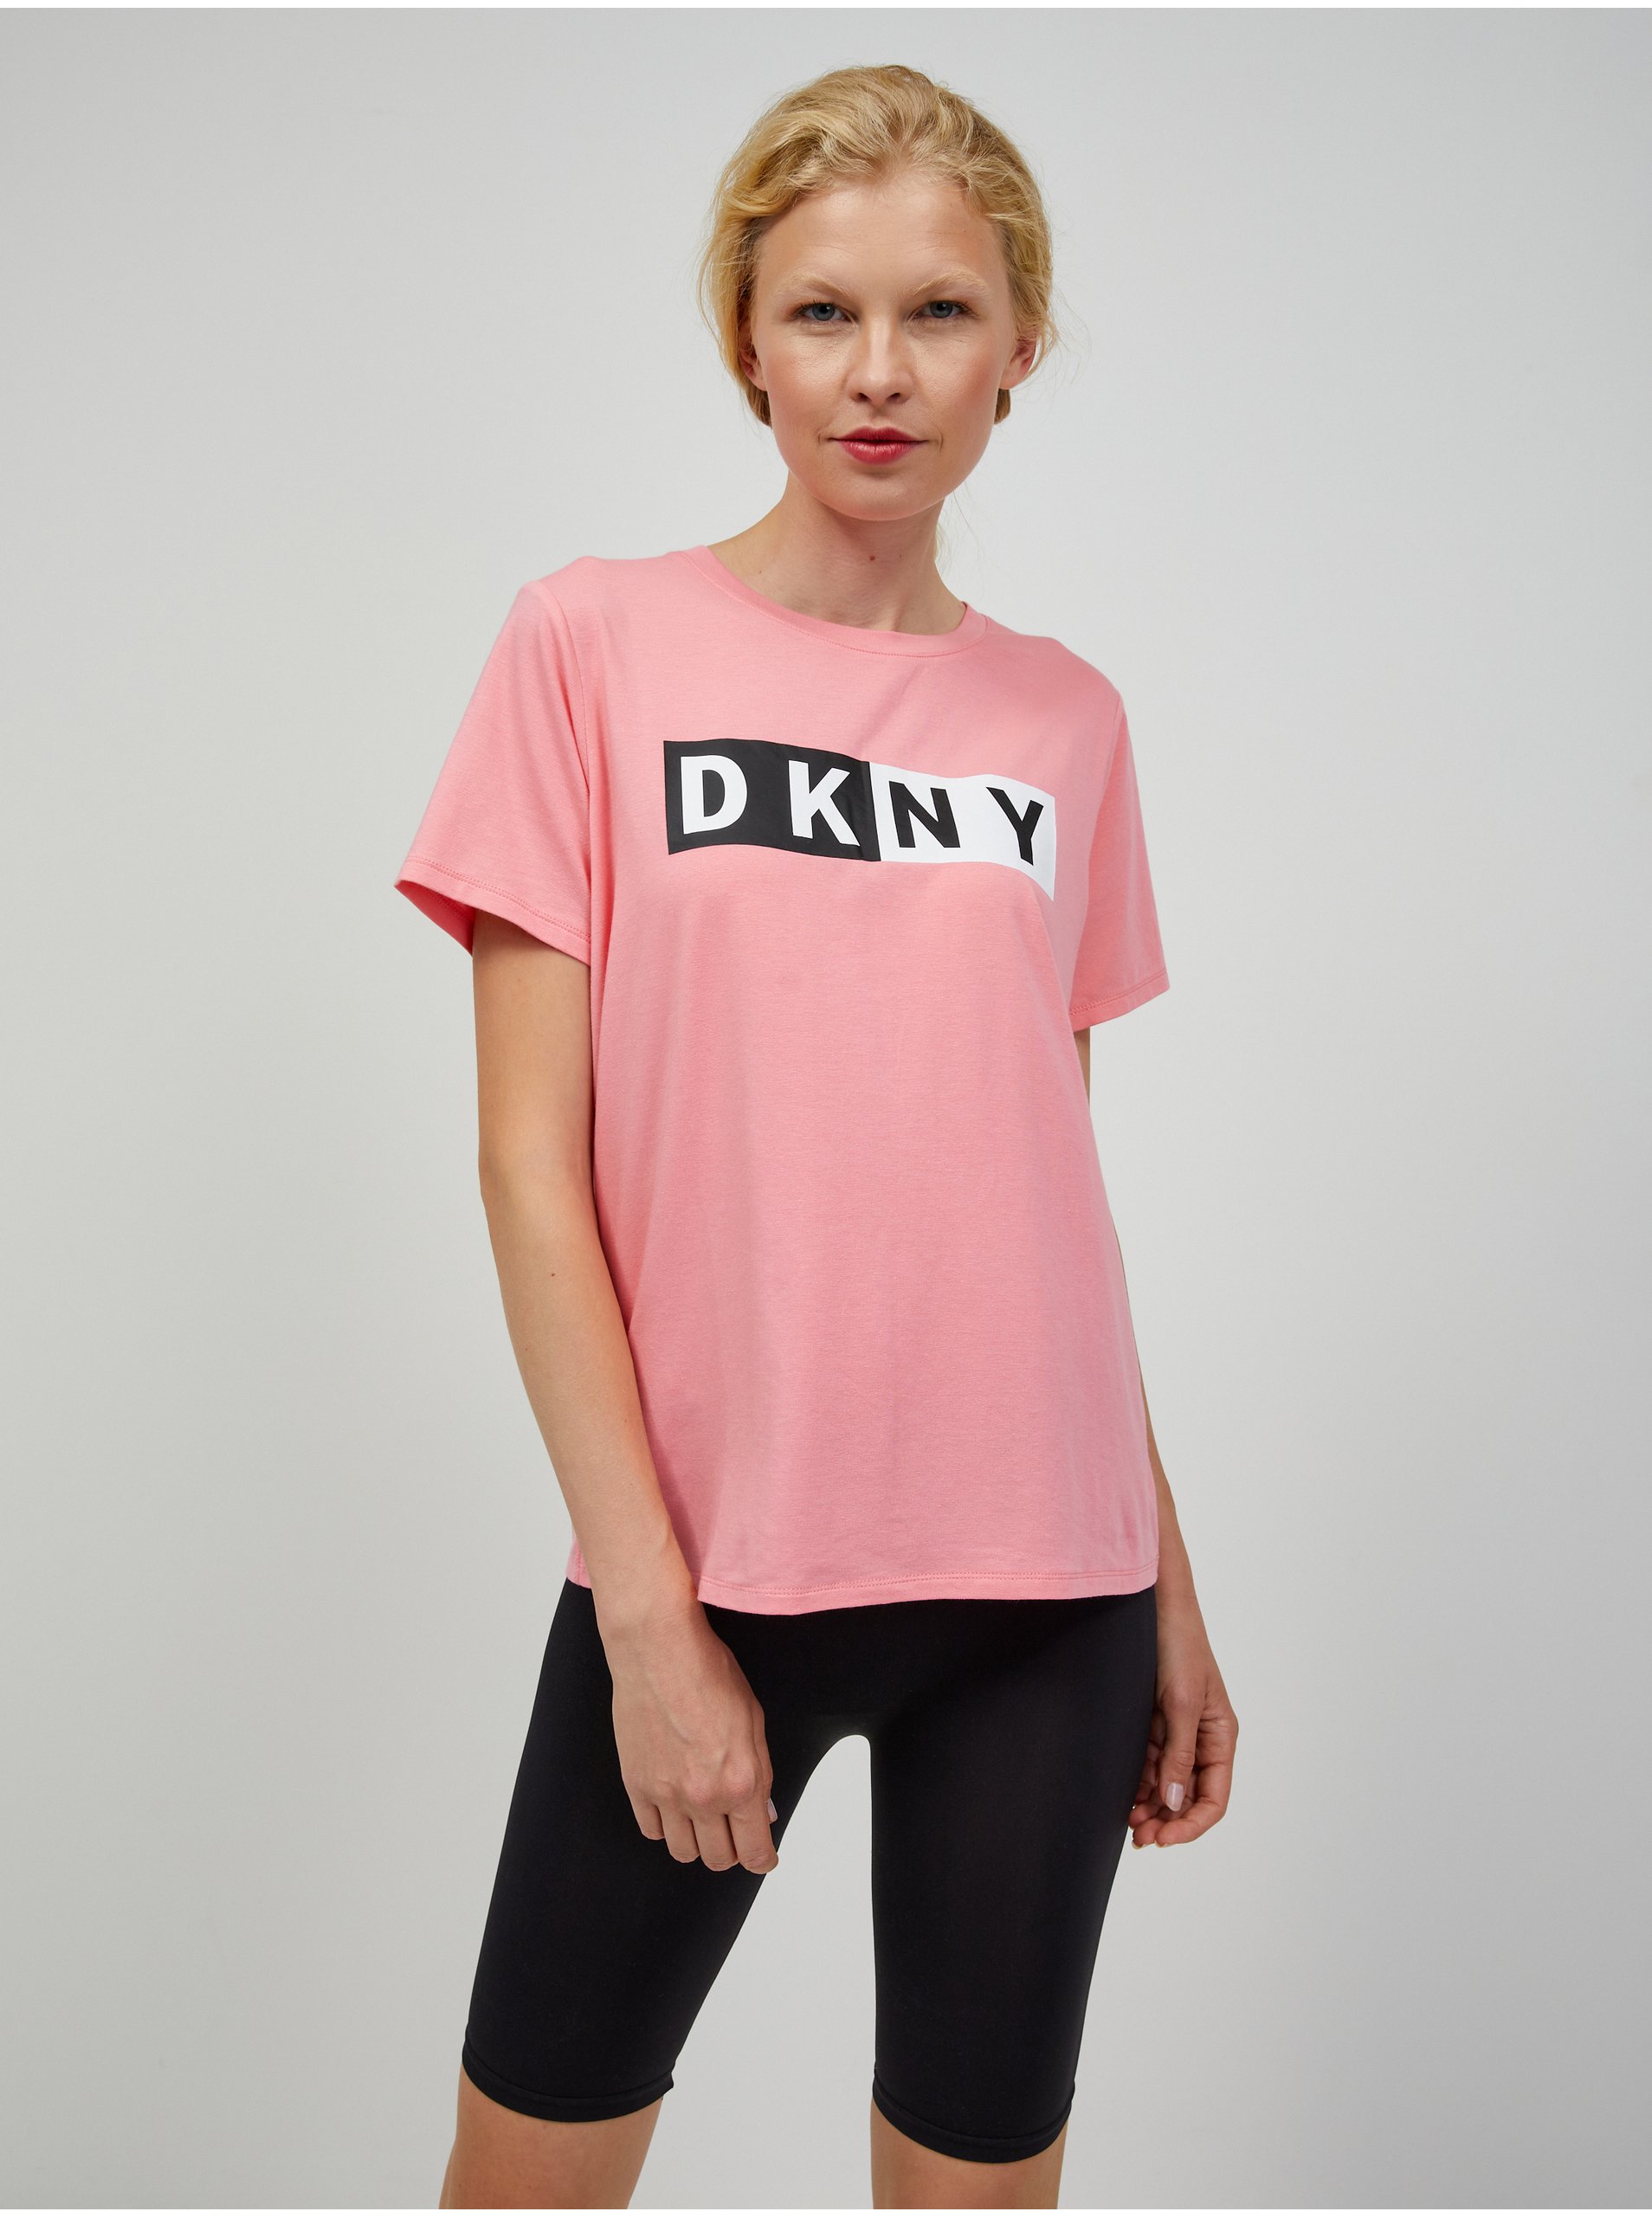 Lacno Svetloružové dámske tričko DKNY